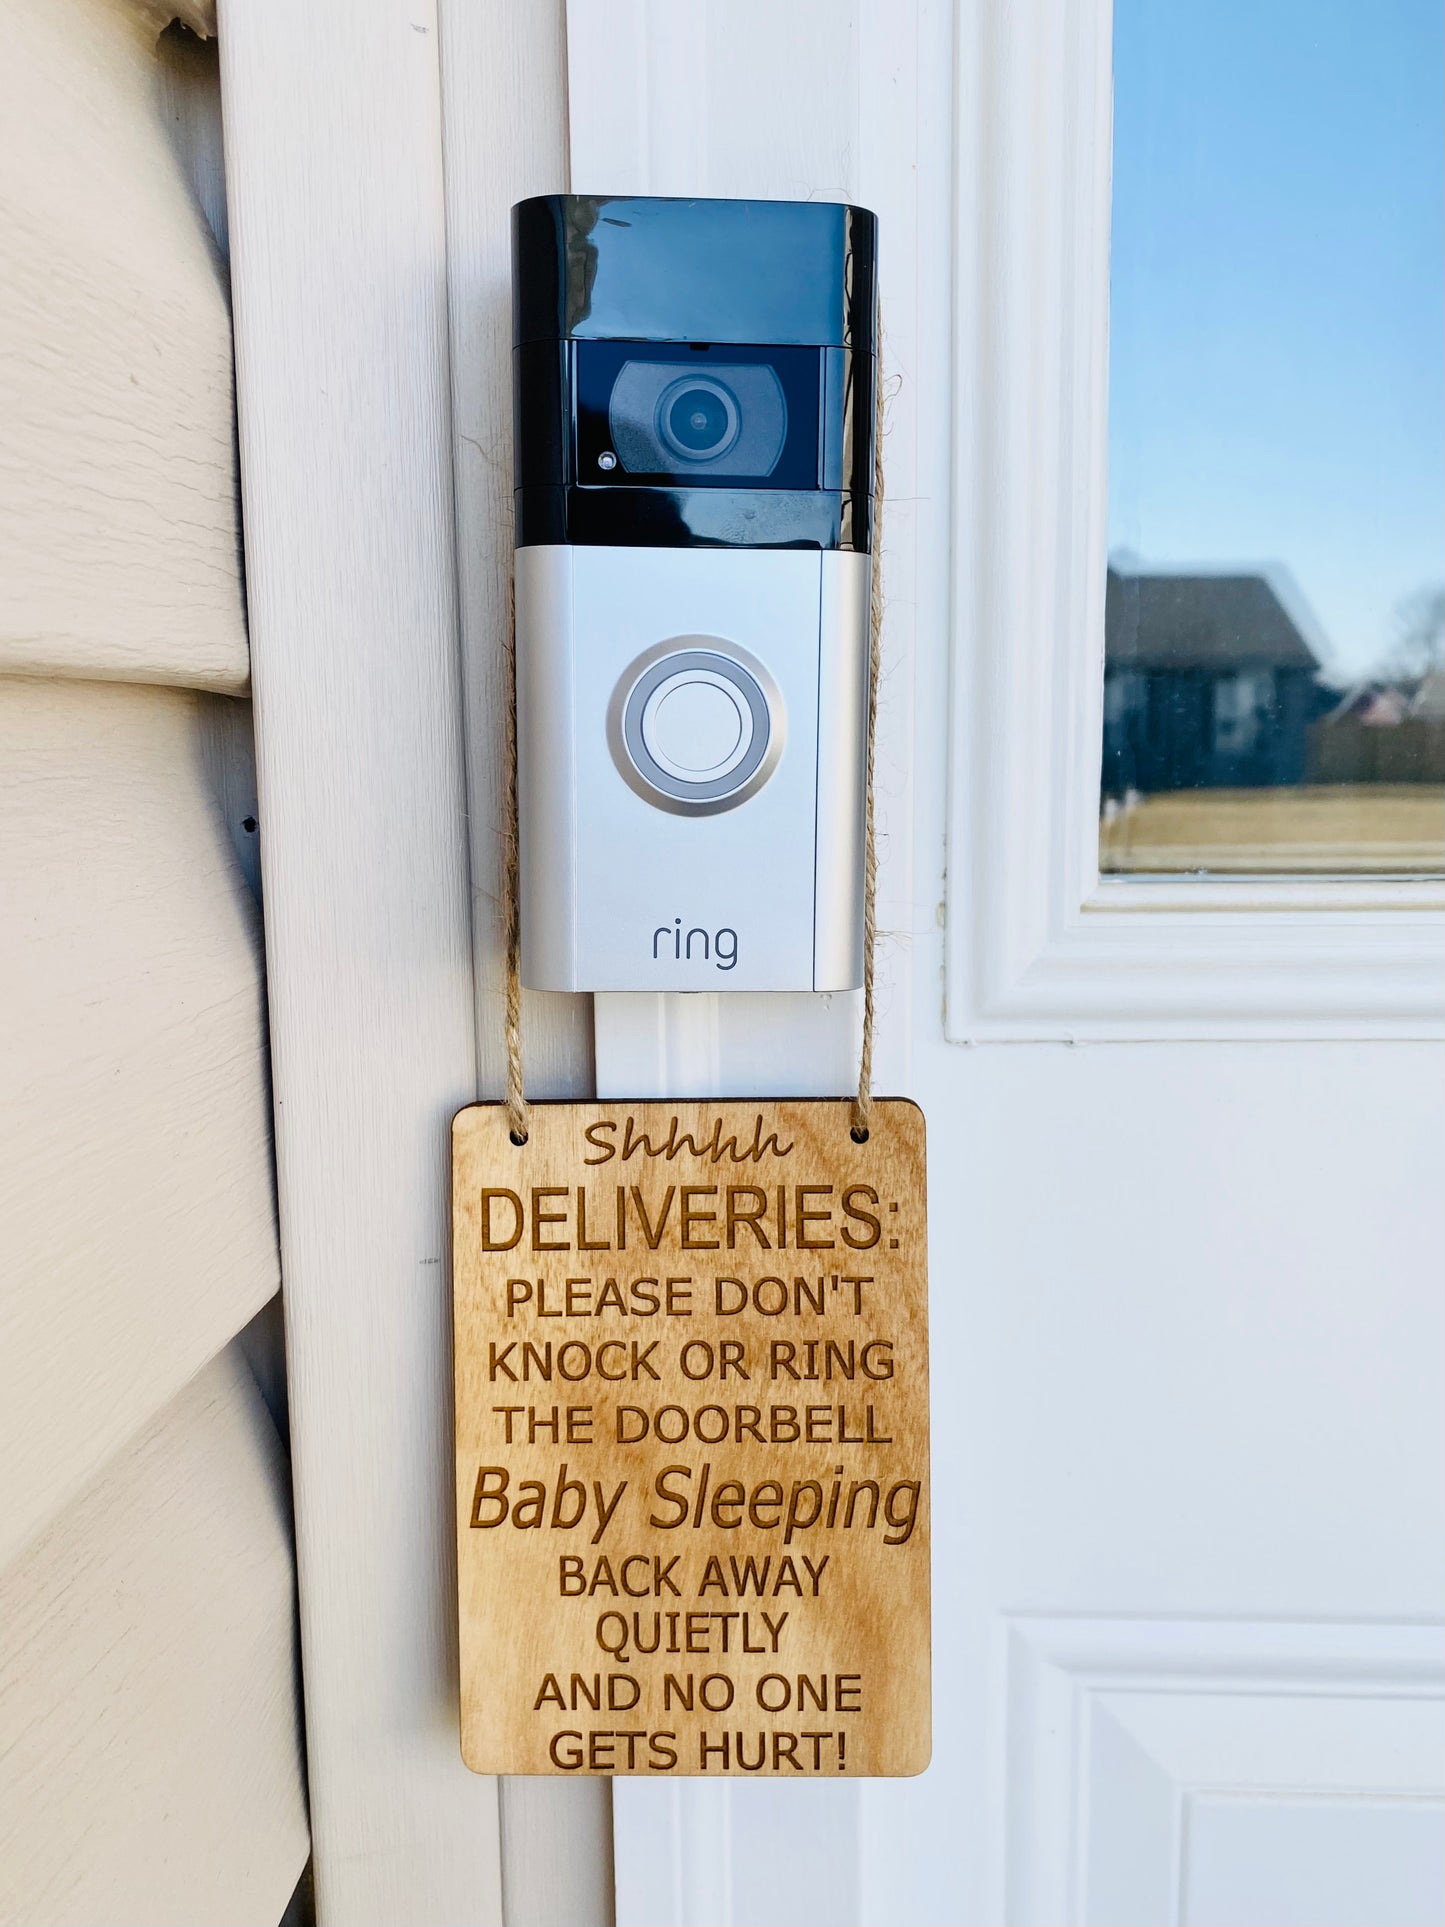 Doorbell Sign, Delivery Doorbell Sign, No Need To Knock Or Ring Doorbell, Baby Doorbell Sign, Baby Sleeping Doorbell Sign